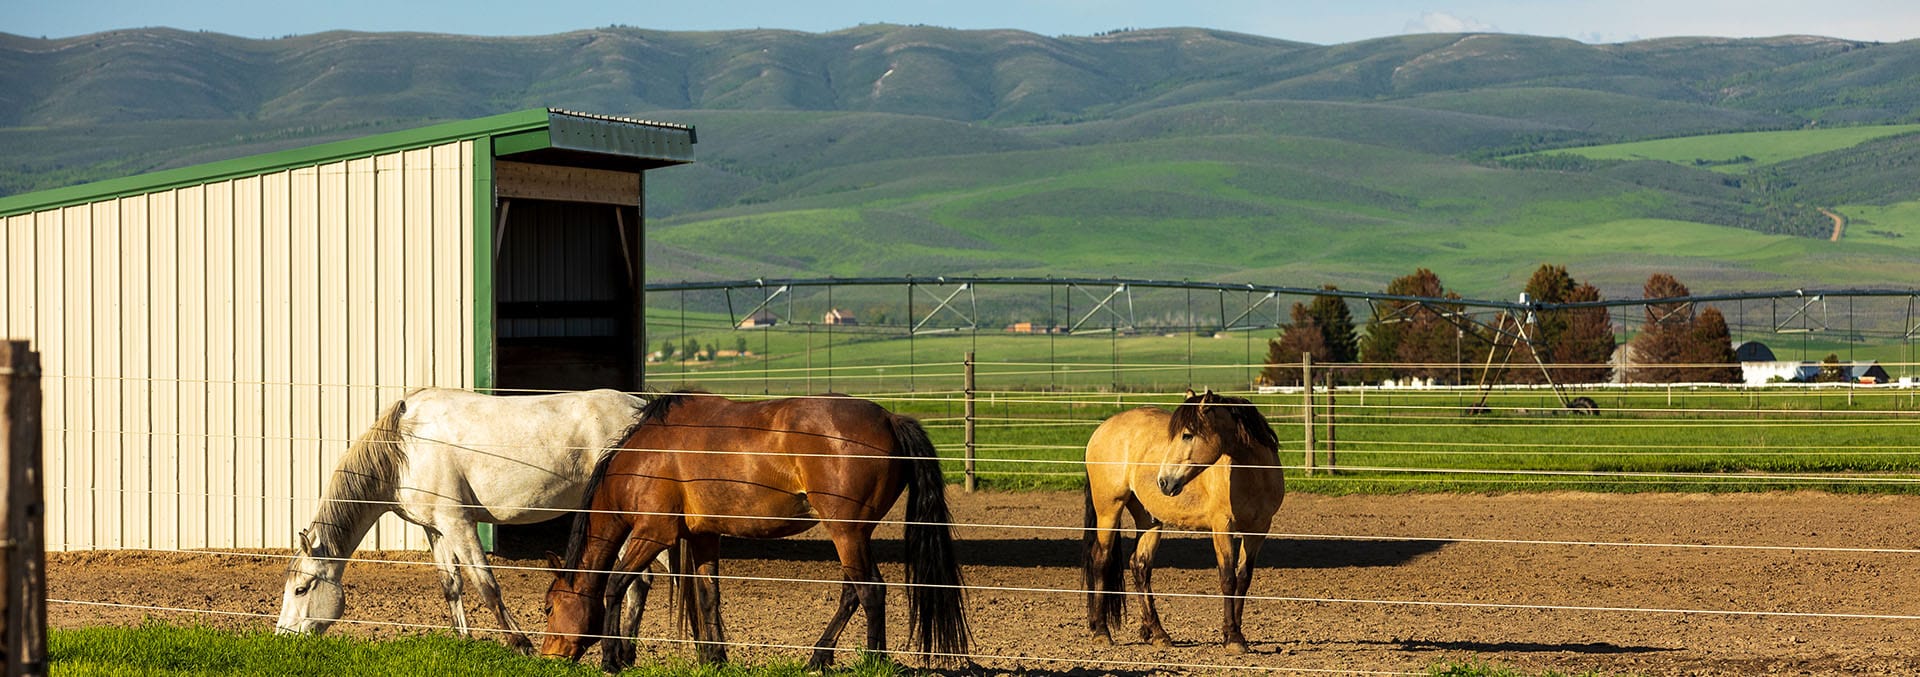 idaho equestrian property for sale knox farm equine center